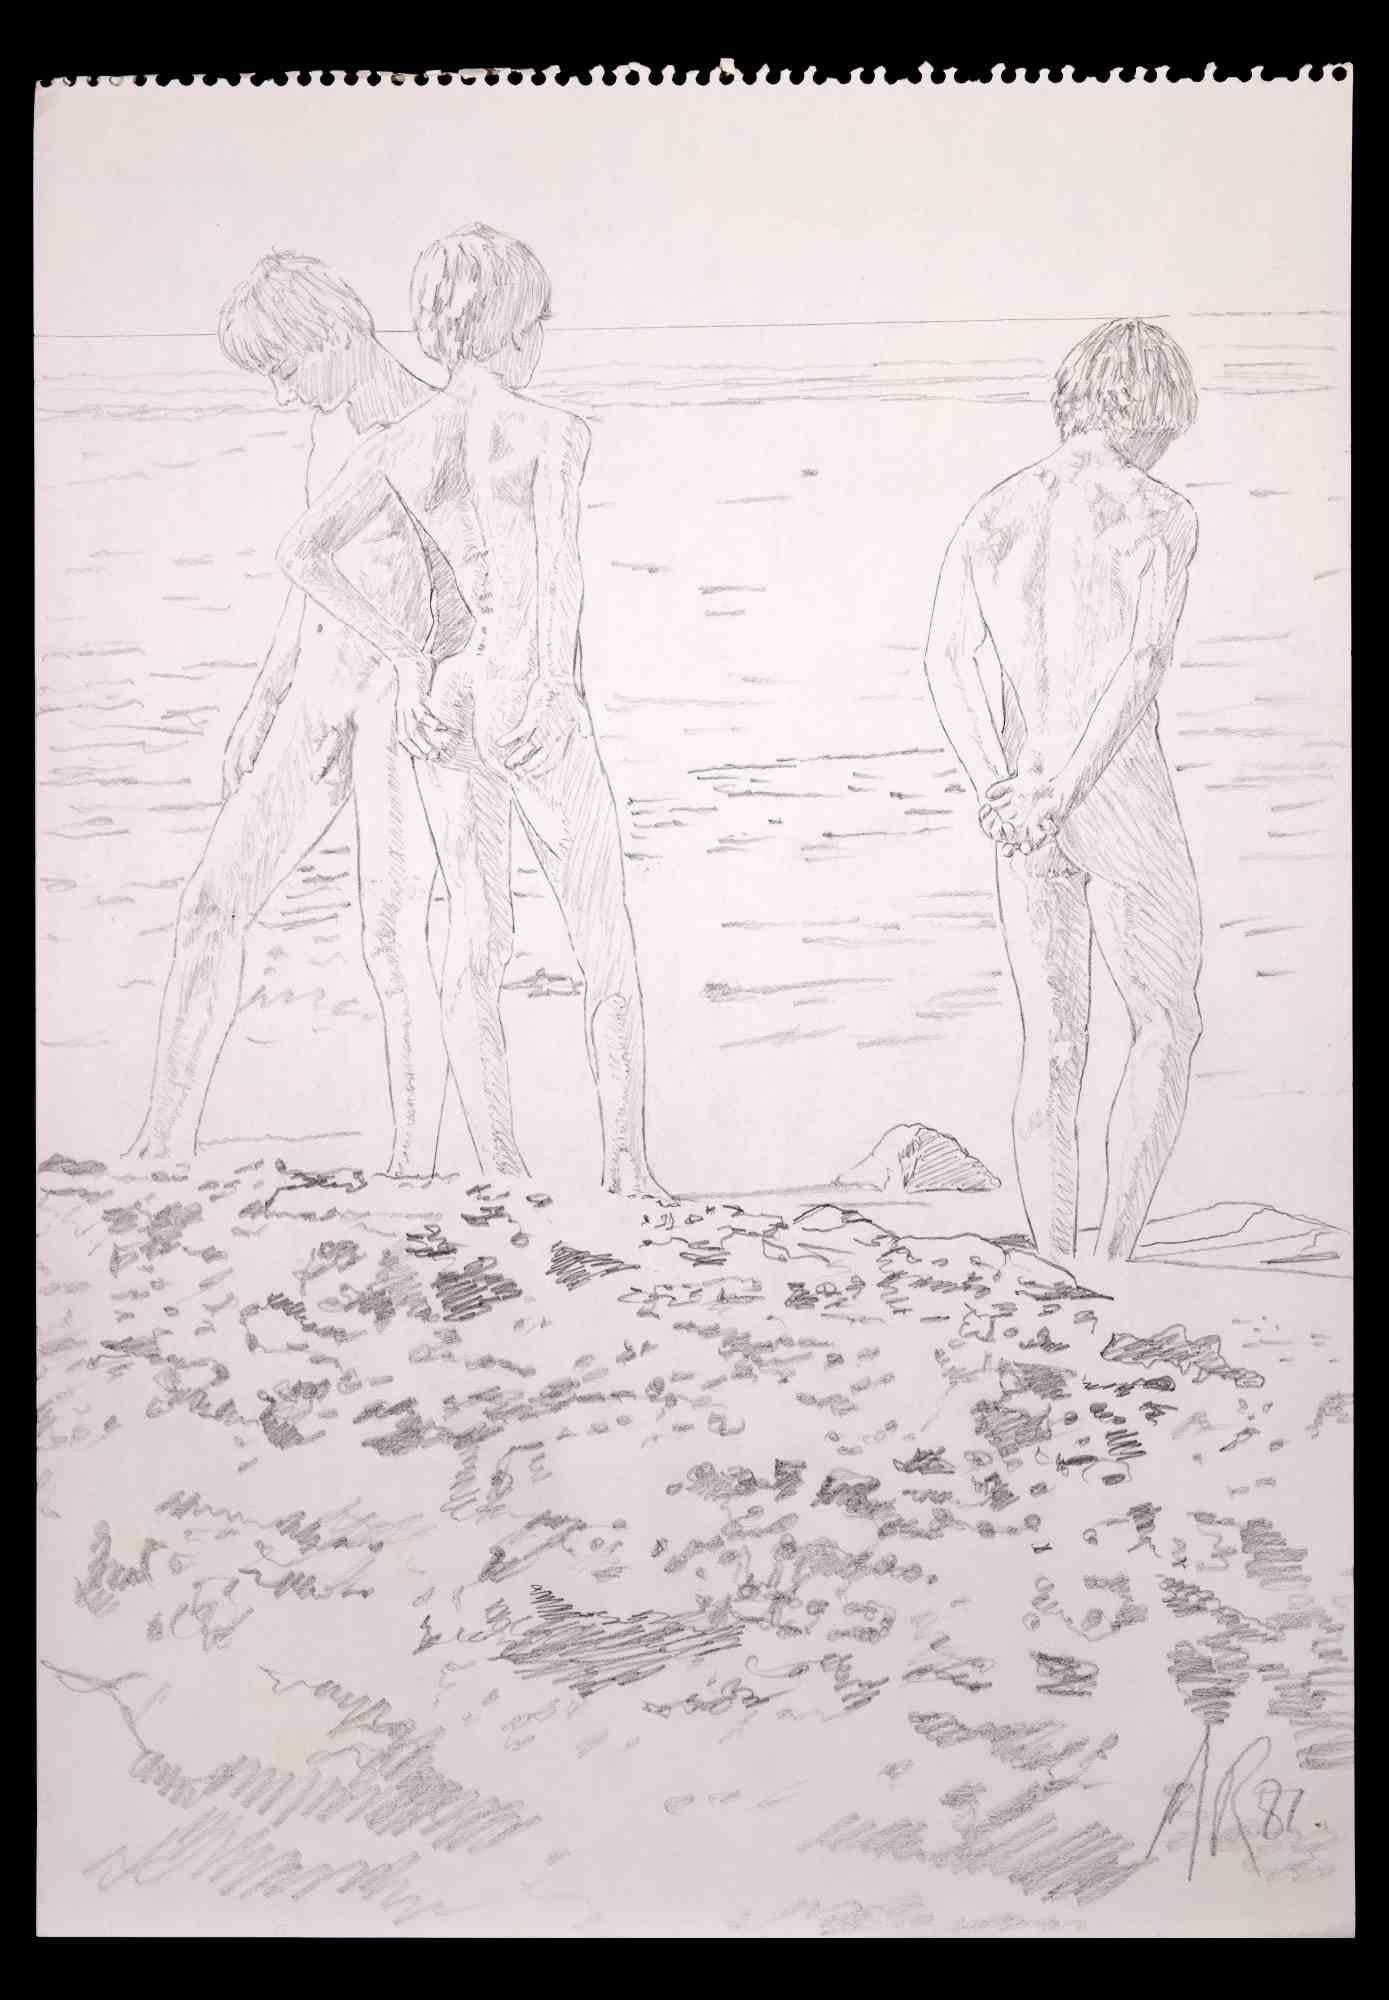 Teens at the beach ist eine Originalzeichnung mit Bleistift von Anthony Roaland aus dem Jahr 1982. Vom Künstler am rechten unteren Rand handsigniert und datiert. 

Die drei Jungen werden in einem frischen und zarten Stil dargestellt.

Gute